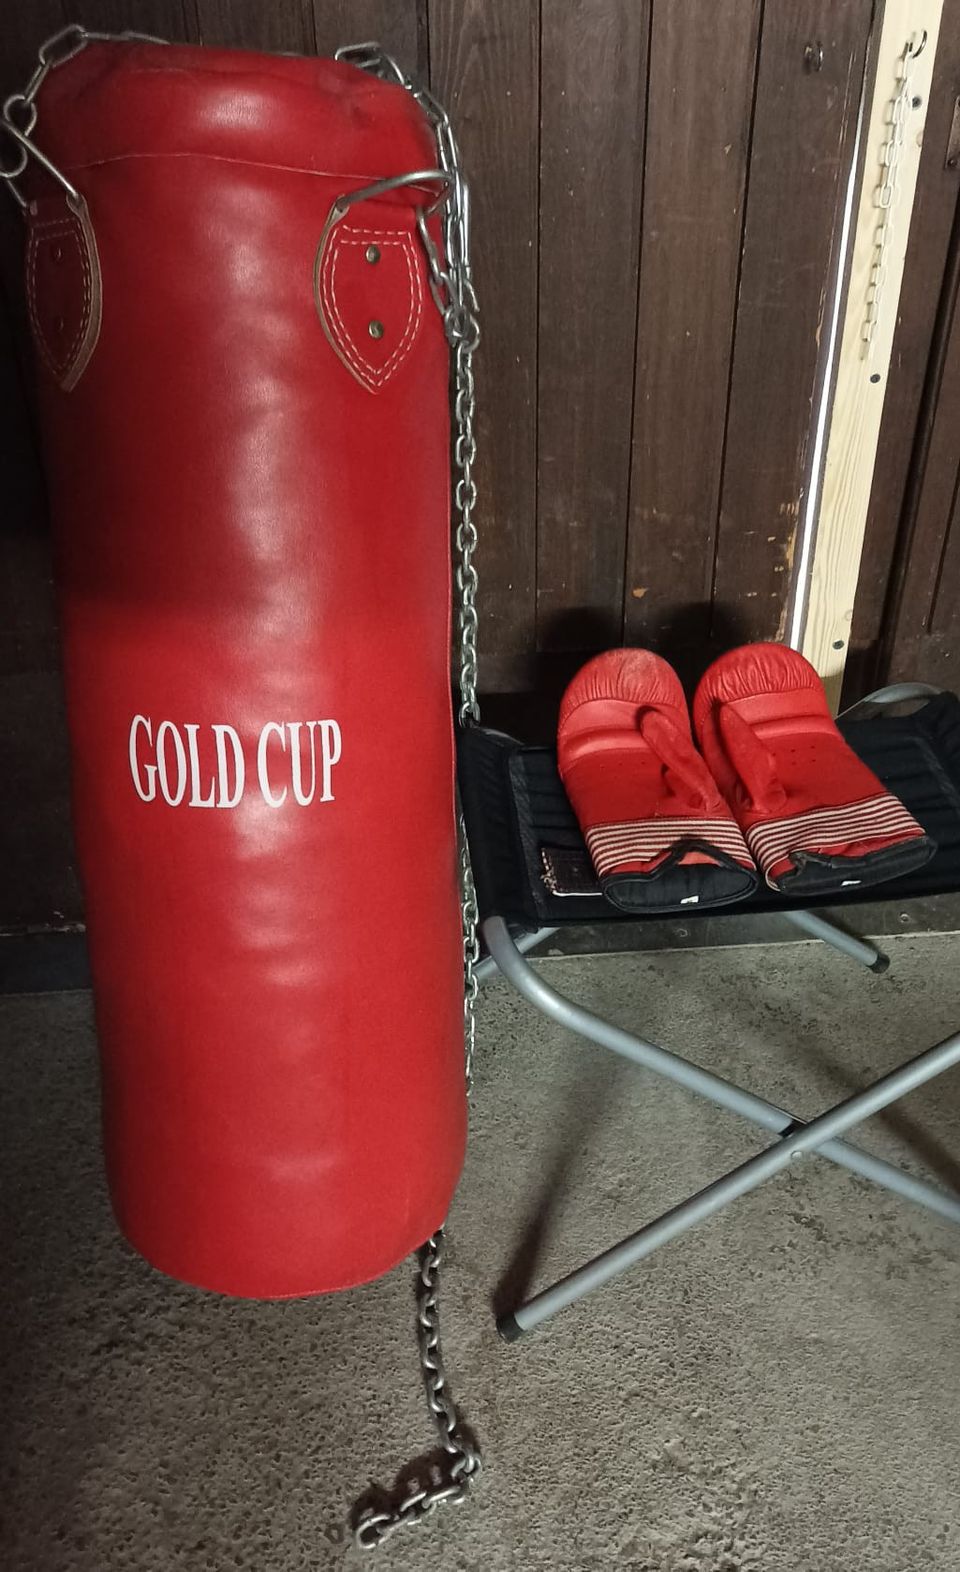 Gold cup nyrkkeilysäkki 25kg